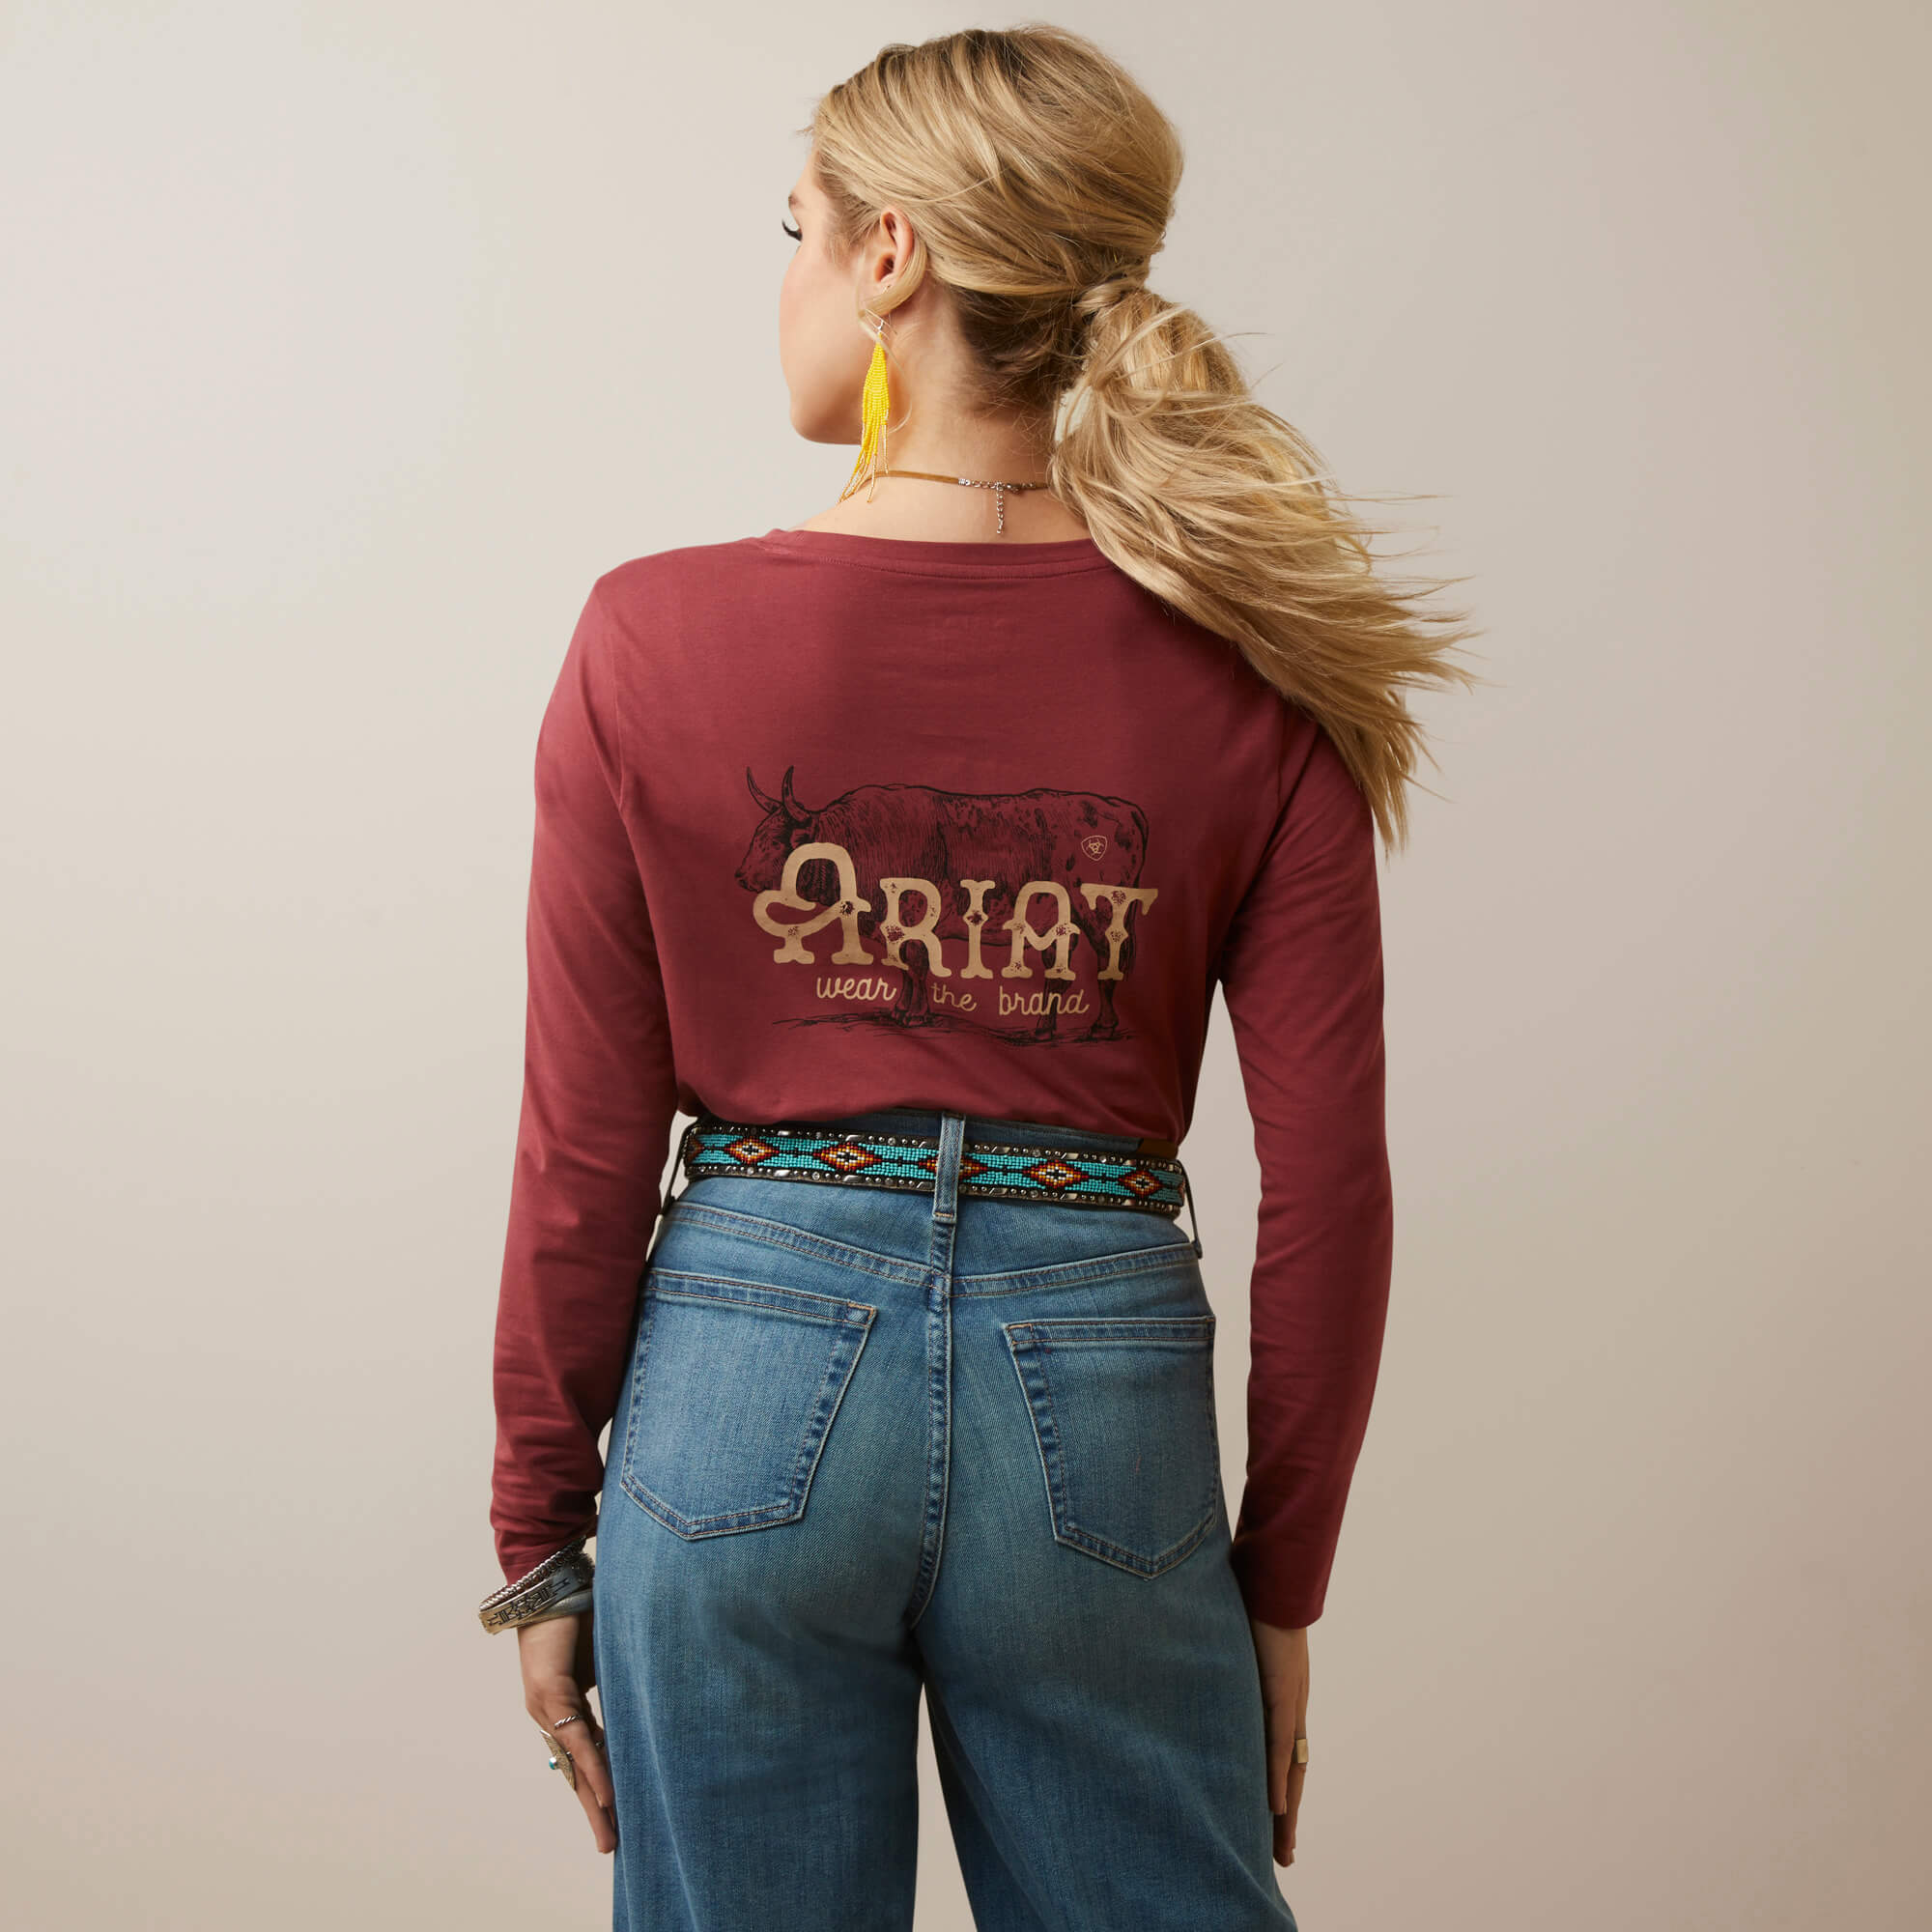 Ariat Women's Wear The Brand Long-Sleeve T-Shirt